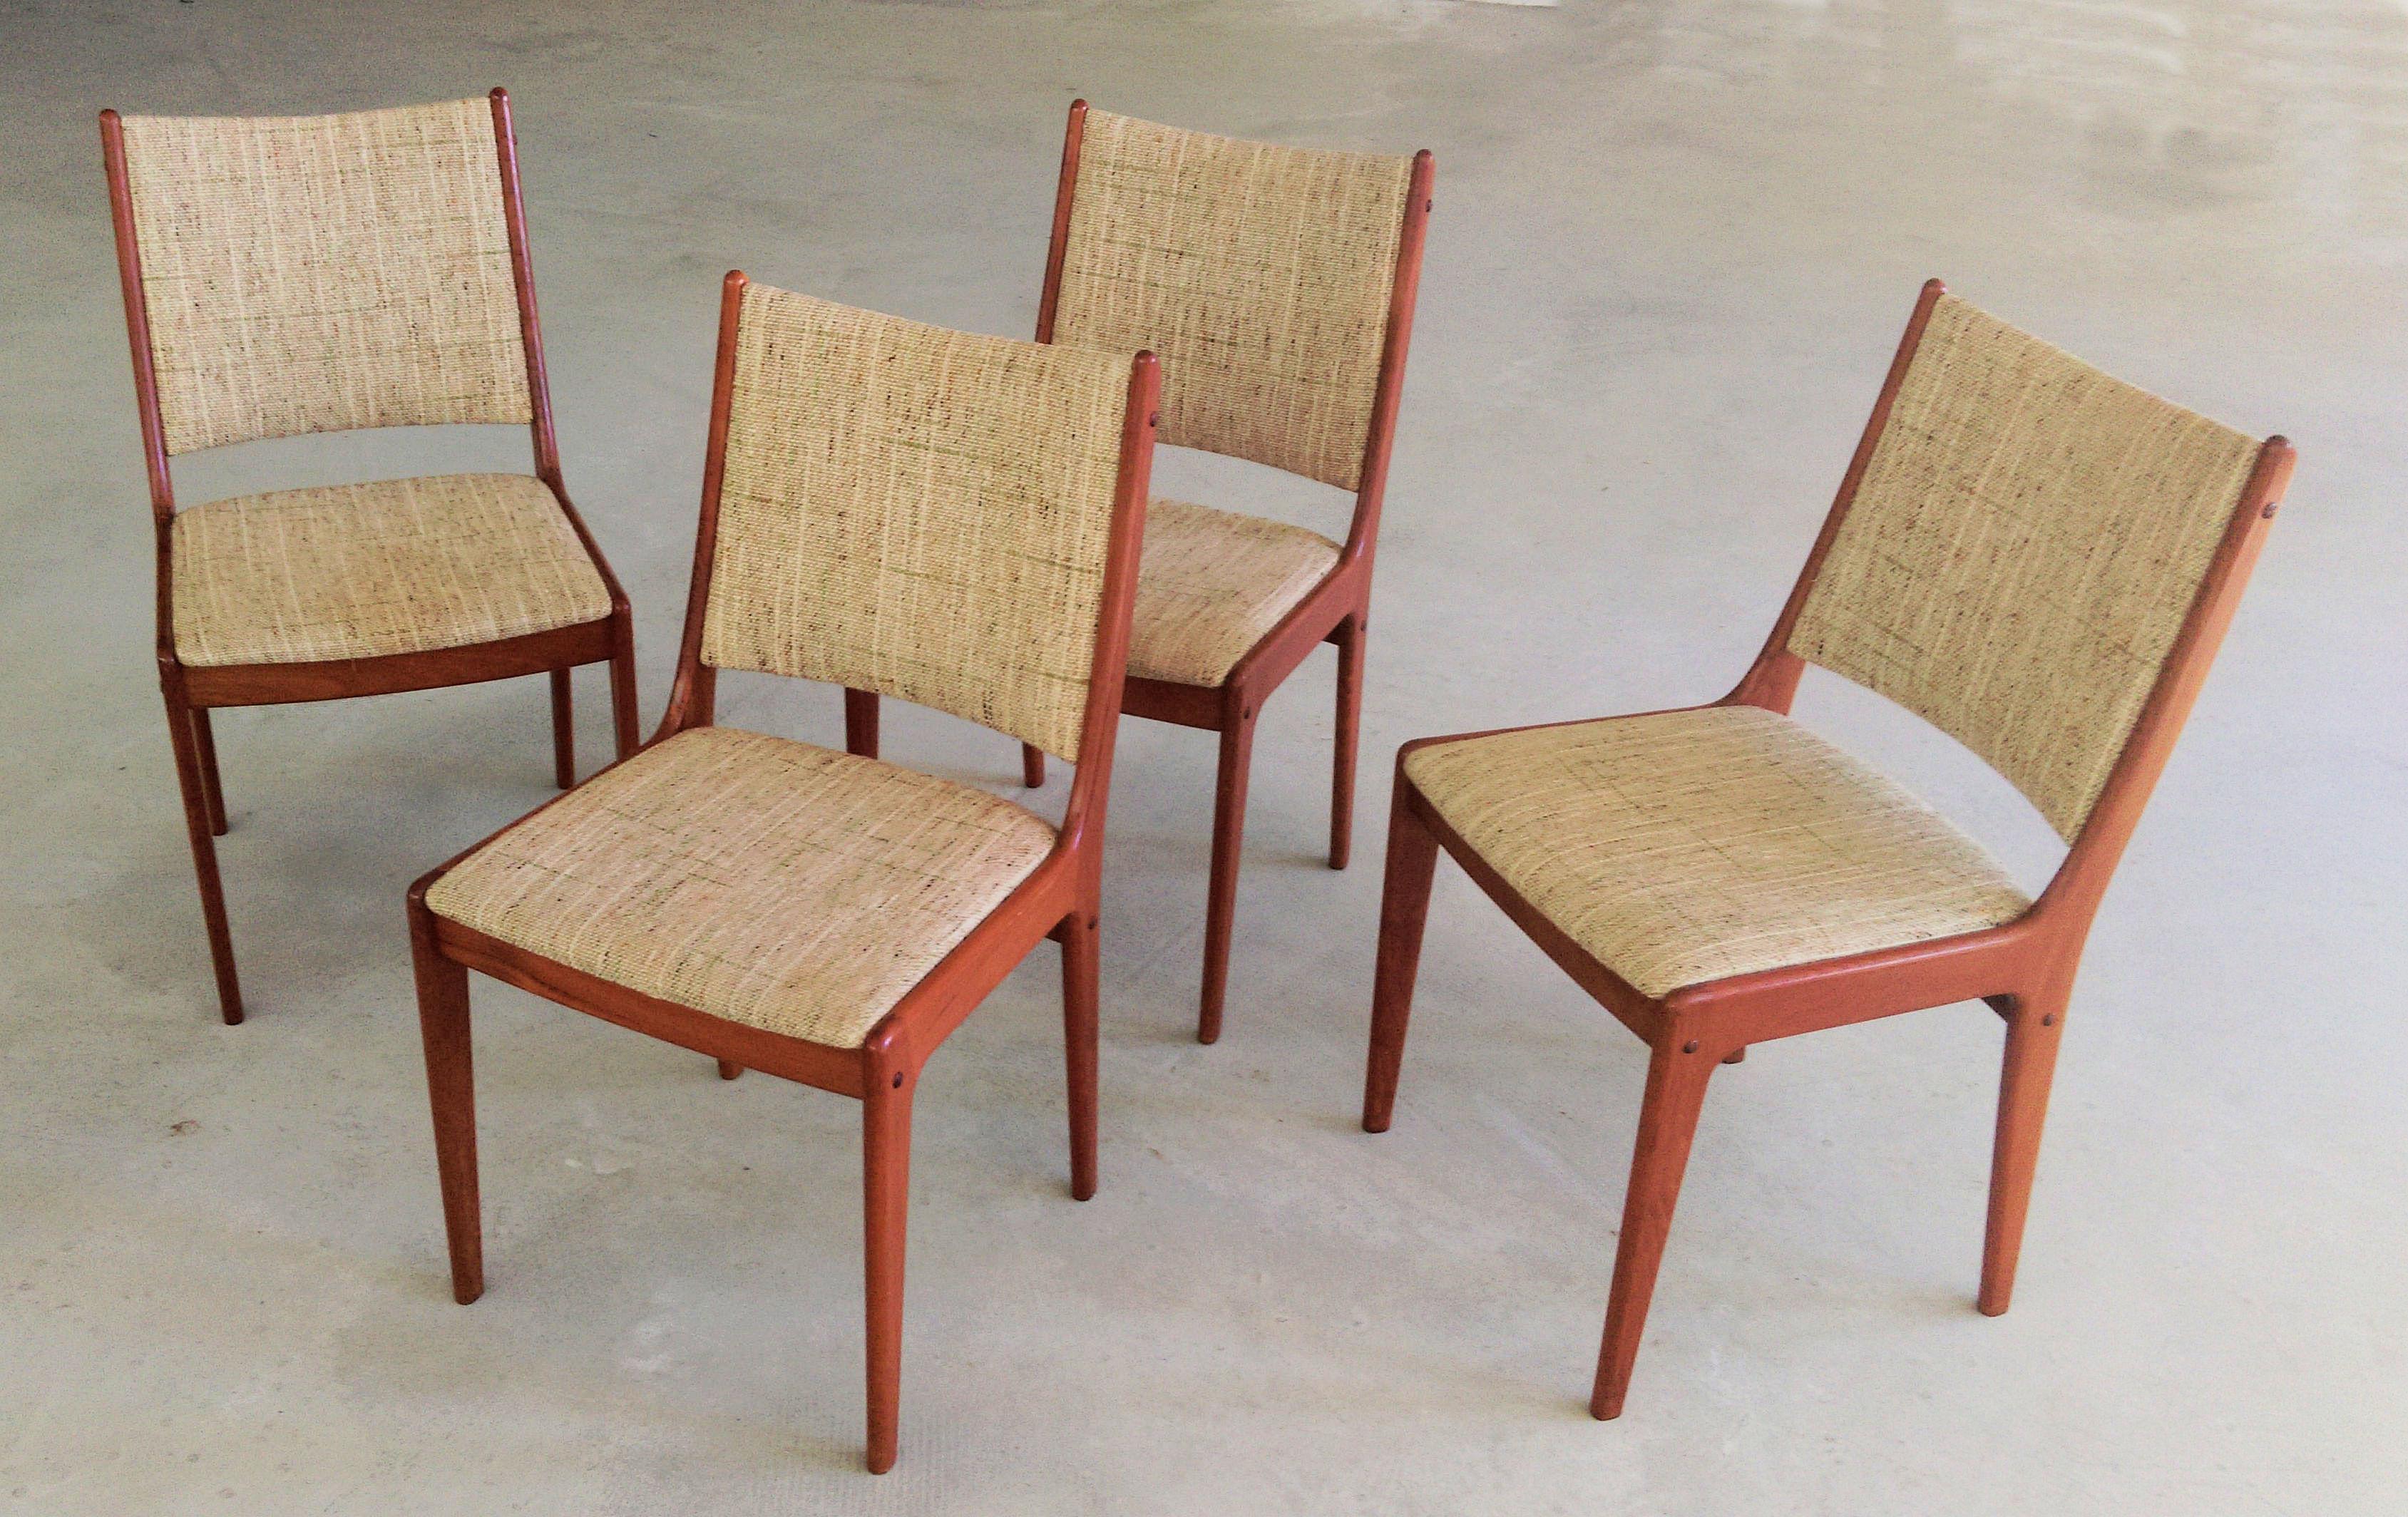 Vier Johannes Andersen Esszimmerstühle aus Teakholz aus den 1960er Jahren von Uldum Møbler, Dänemark.

Die Esszimmerstühle zeichnen sich durch ein schlichtes, aber elegantes Design aus, das in den meisten Häusern eine gute Figur macht. 

Die Stühle